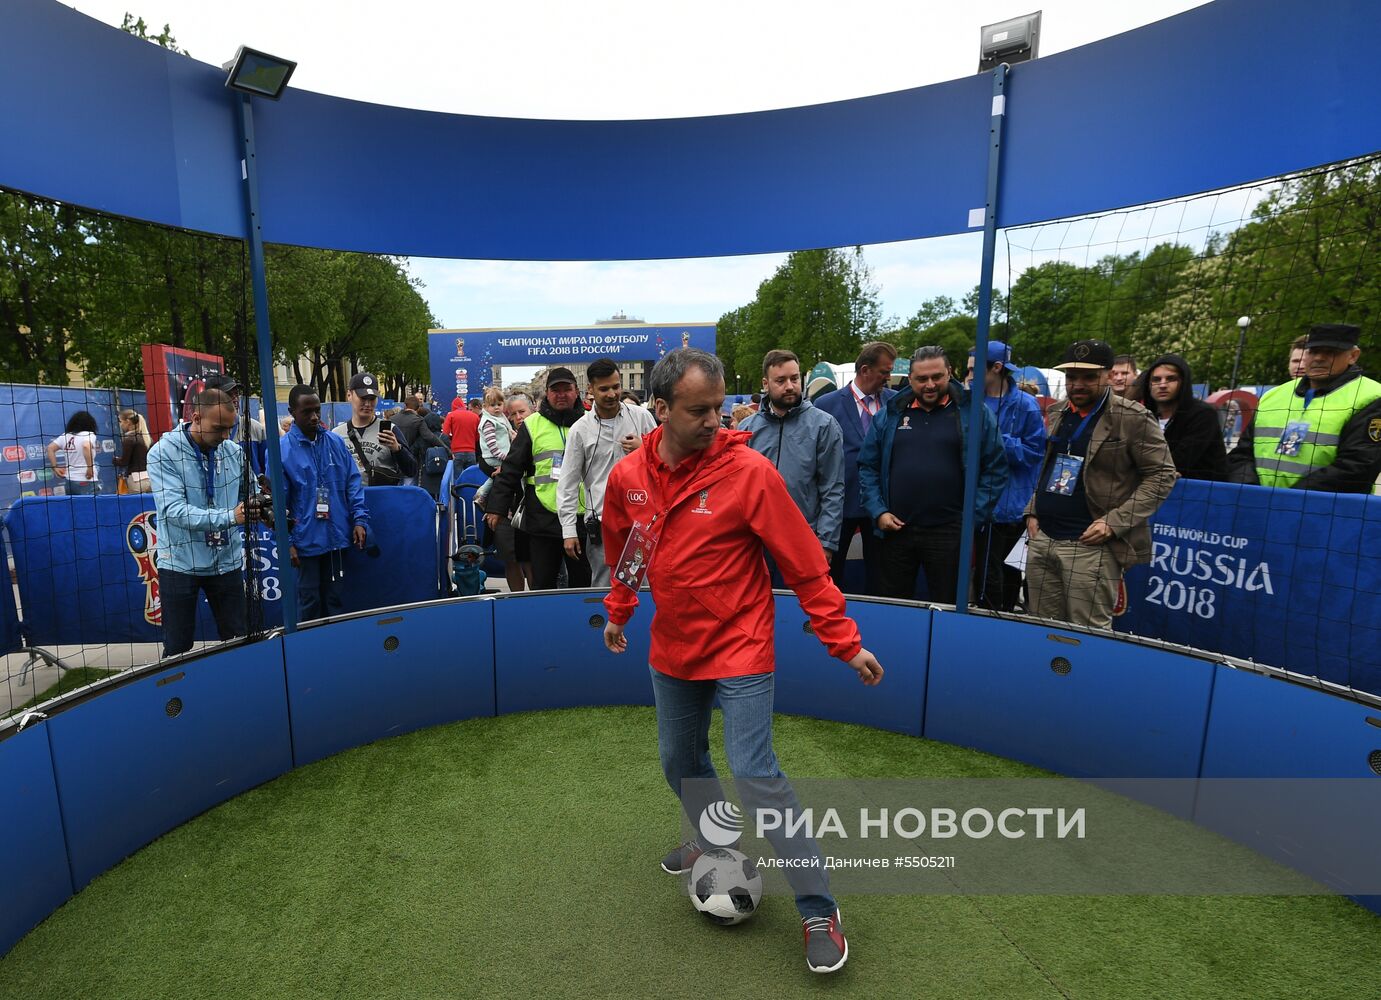 Парк футбола ЧМ-2018 в Санкт-Петербурге